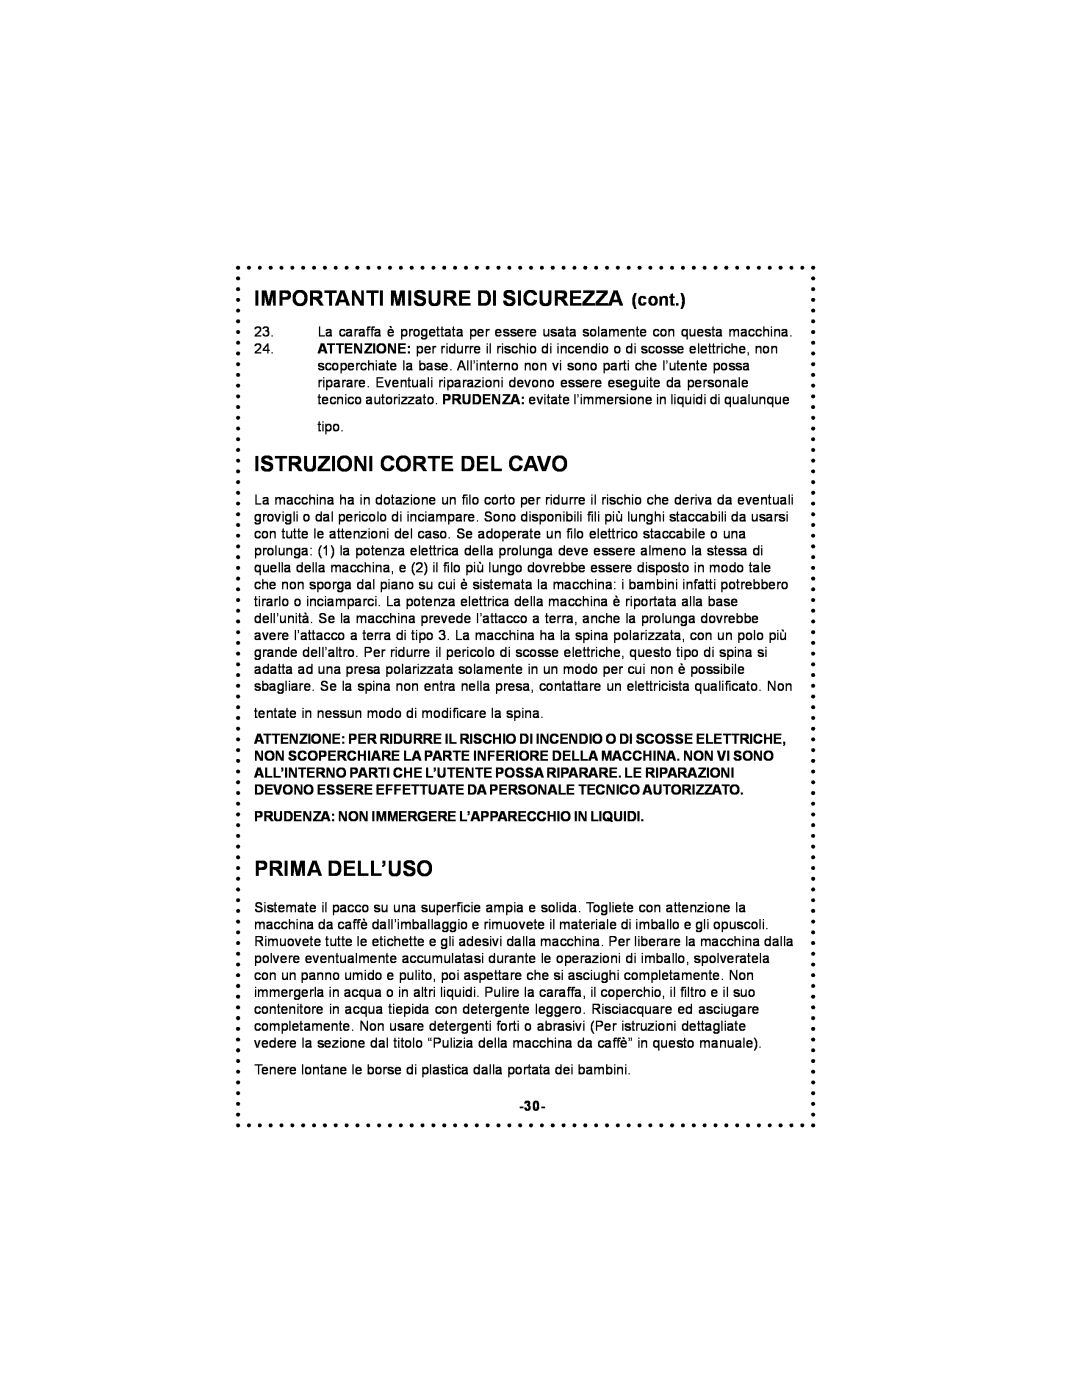 DeLonghi DC50T instruction manual IMPORTANTI MISURE DI SICUREZZA cont, Istruzioni Corte Del Cavo, Prima Dell’Uso 